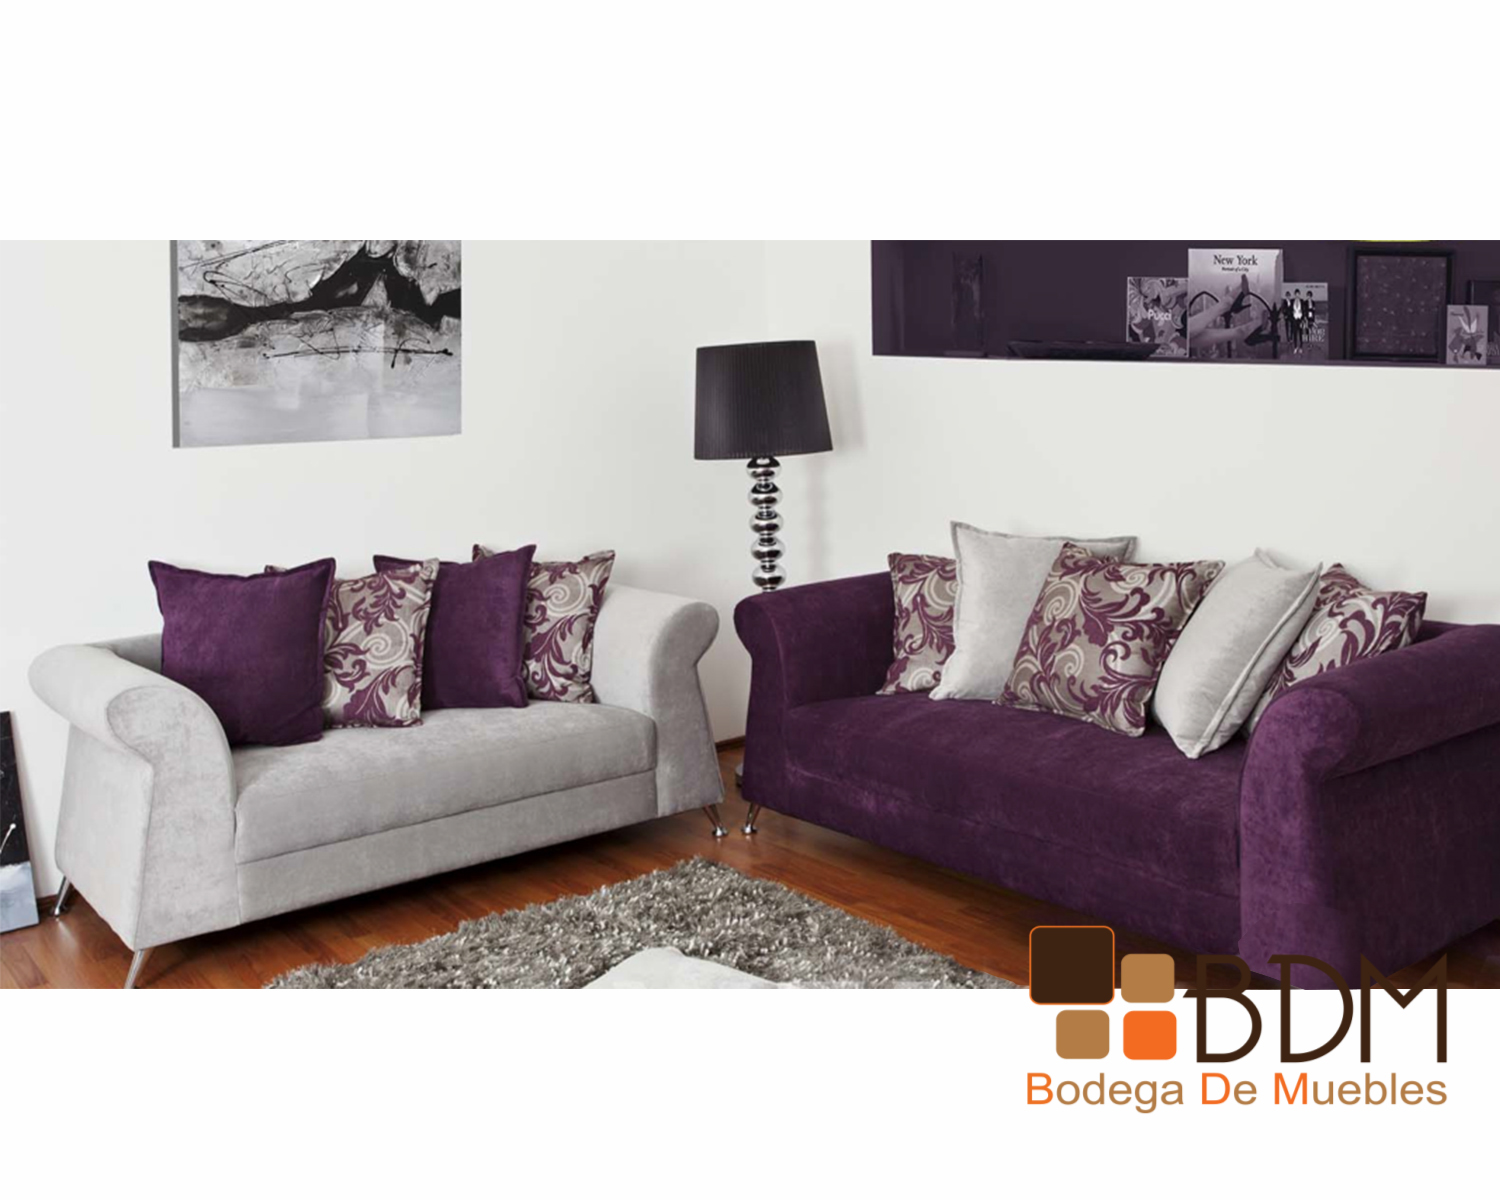 Sala Combinada a Dos Colores - Bodega Muebles | Mueblería Online